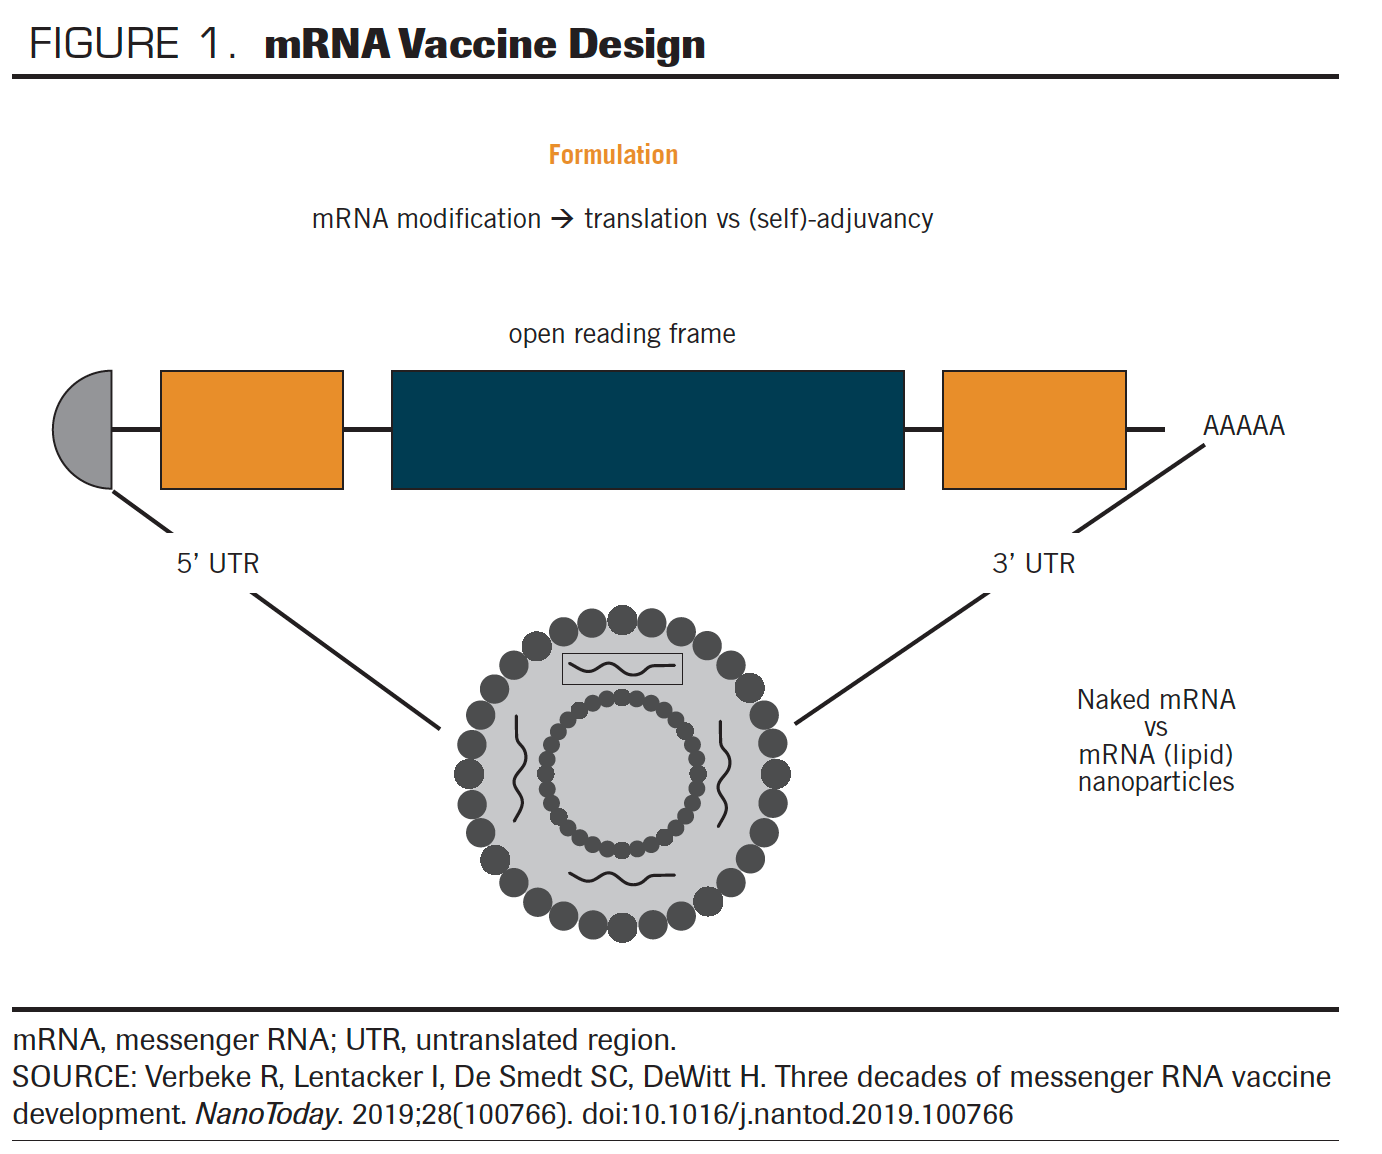 FIGURE 1. mRNA Vaccine Design